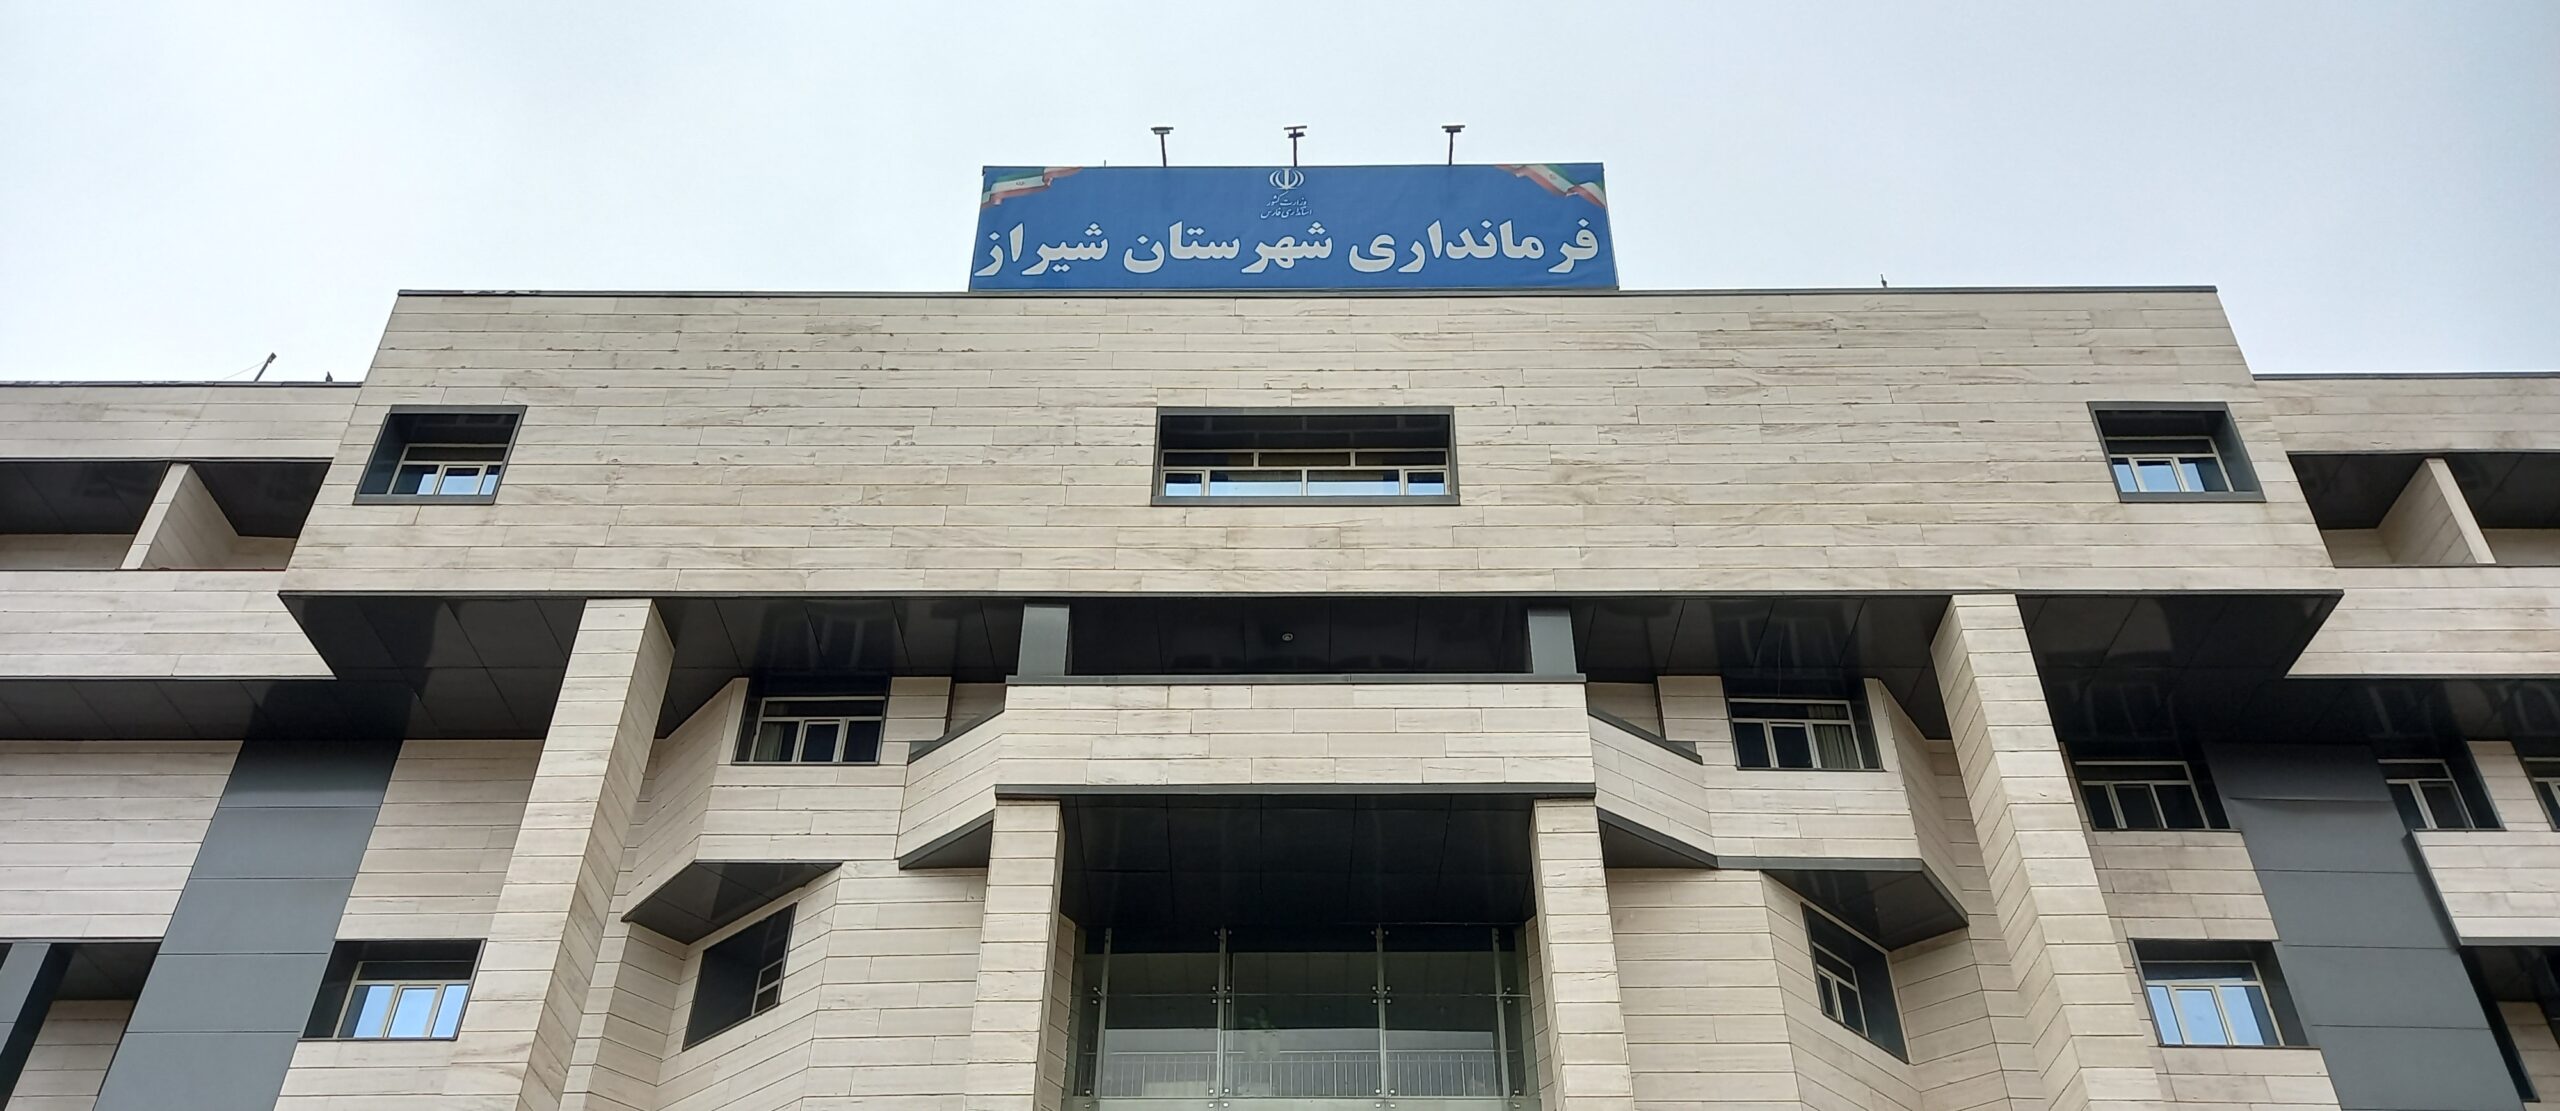 نتایج رسمی و قطعی انتخابات در شیراز و زرقان اعلام شد/ قادری و نجابت به بهارستان رفتند